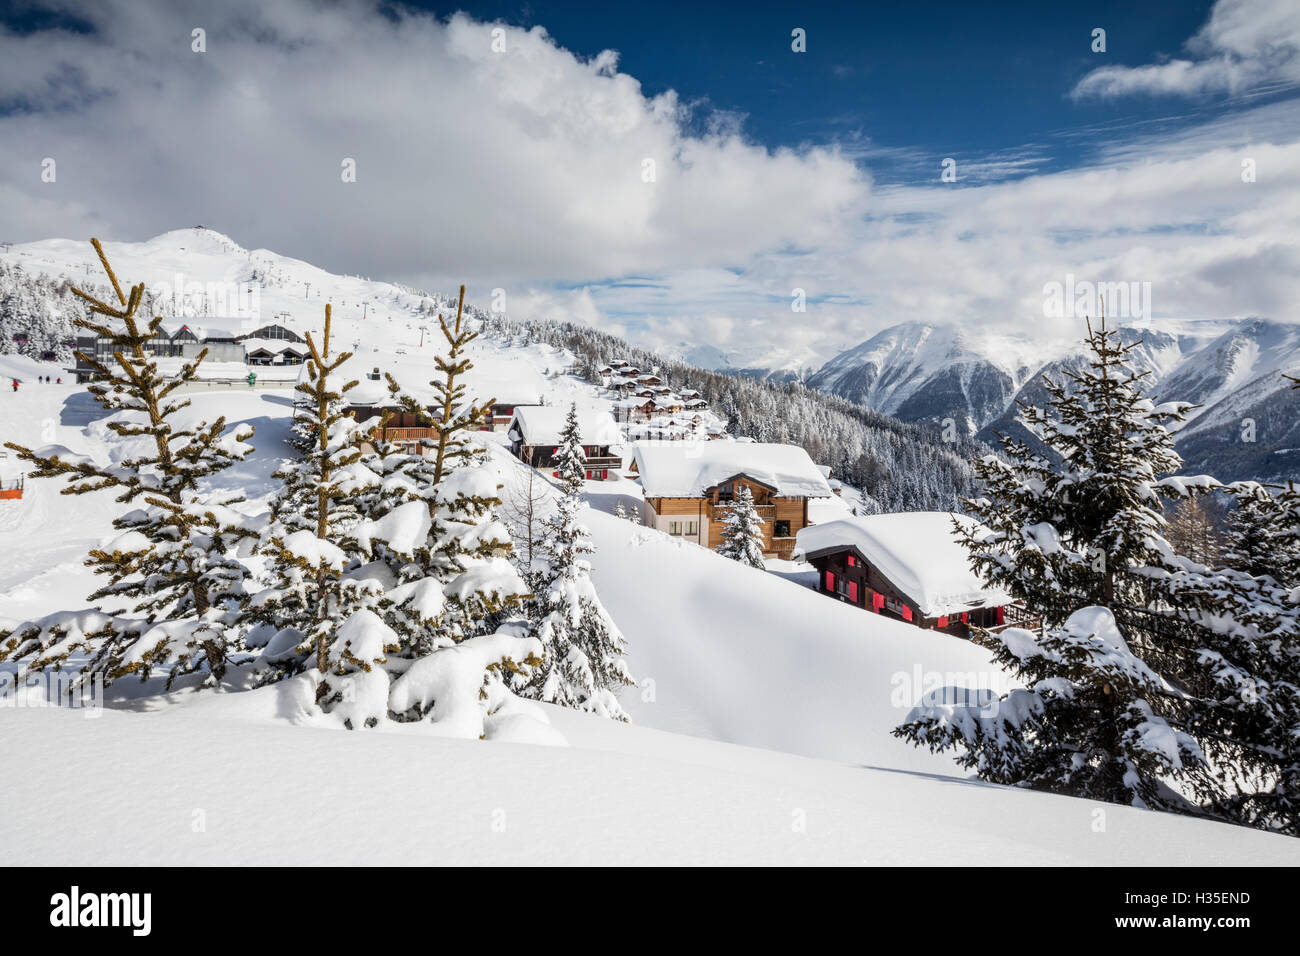 Die Wintersonne scheint auf die verschneiten Berge Hütten und Wälder, Bettmeralp, Bezirk von Raron, Kanton Wallis, Schweiz Stockfoto